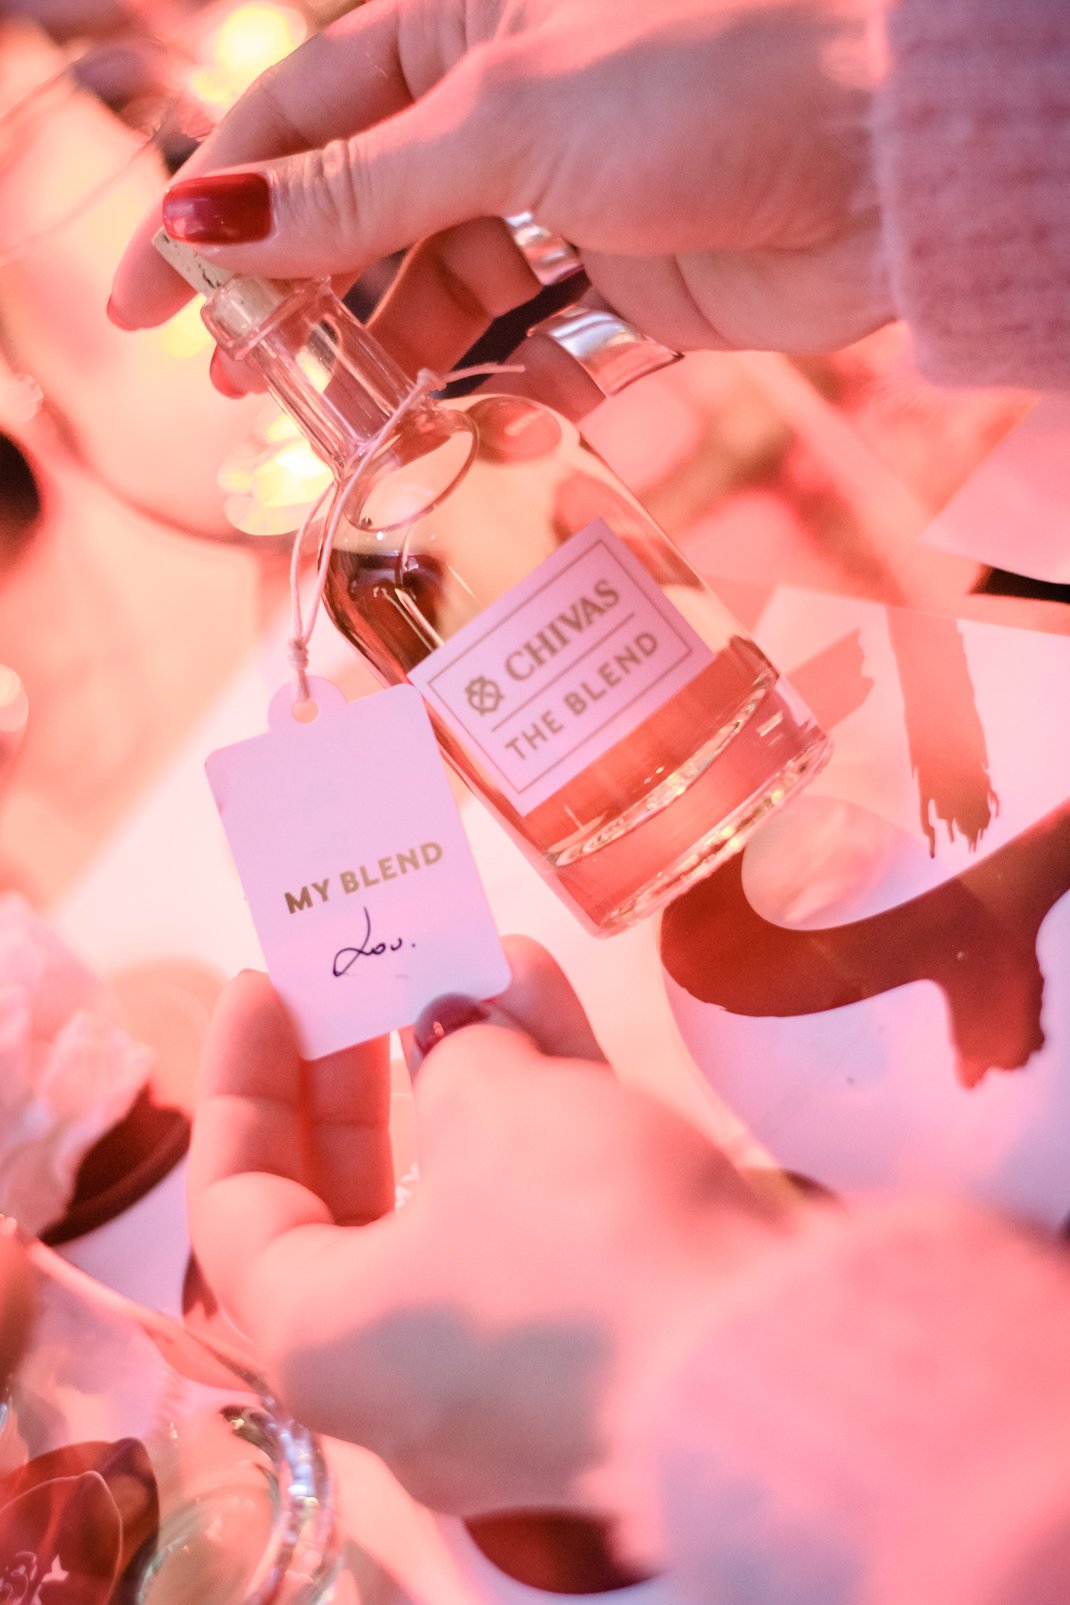 3. Οι παρευρισκόμενοι δημιούργησαν το δικό τους Chivas blend, συνδυάζοντας σπάνια αποστάγματα του αγαπημένου τους σκωτσέζικου whisky